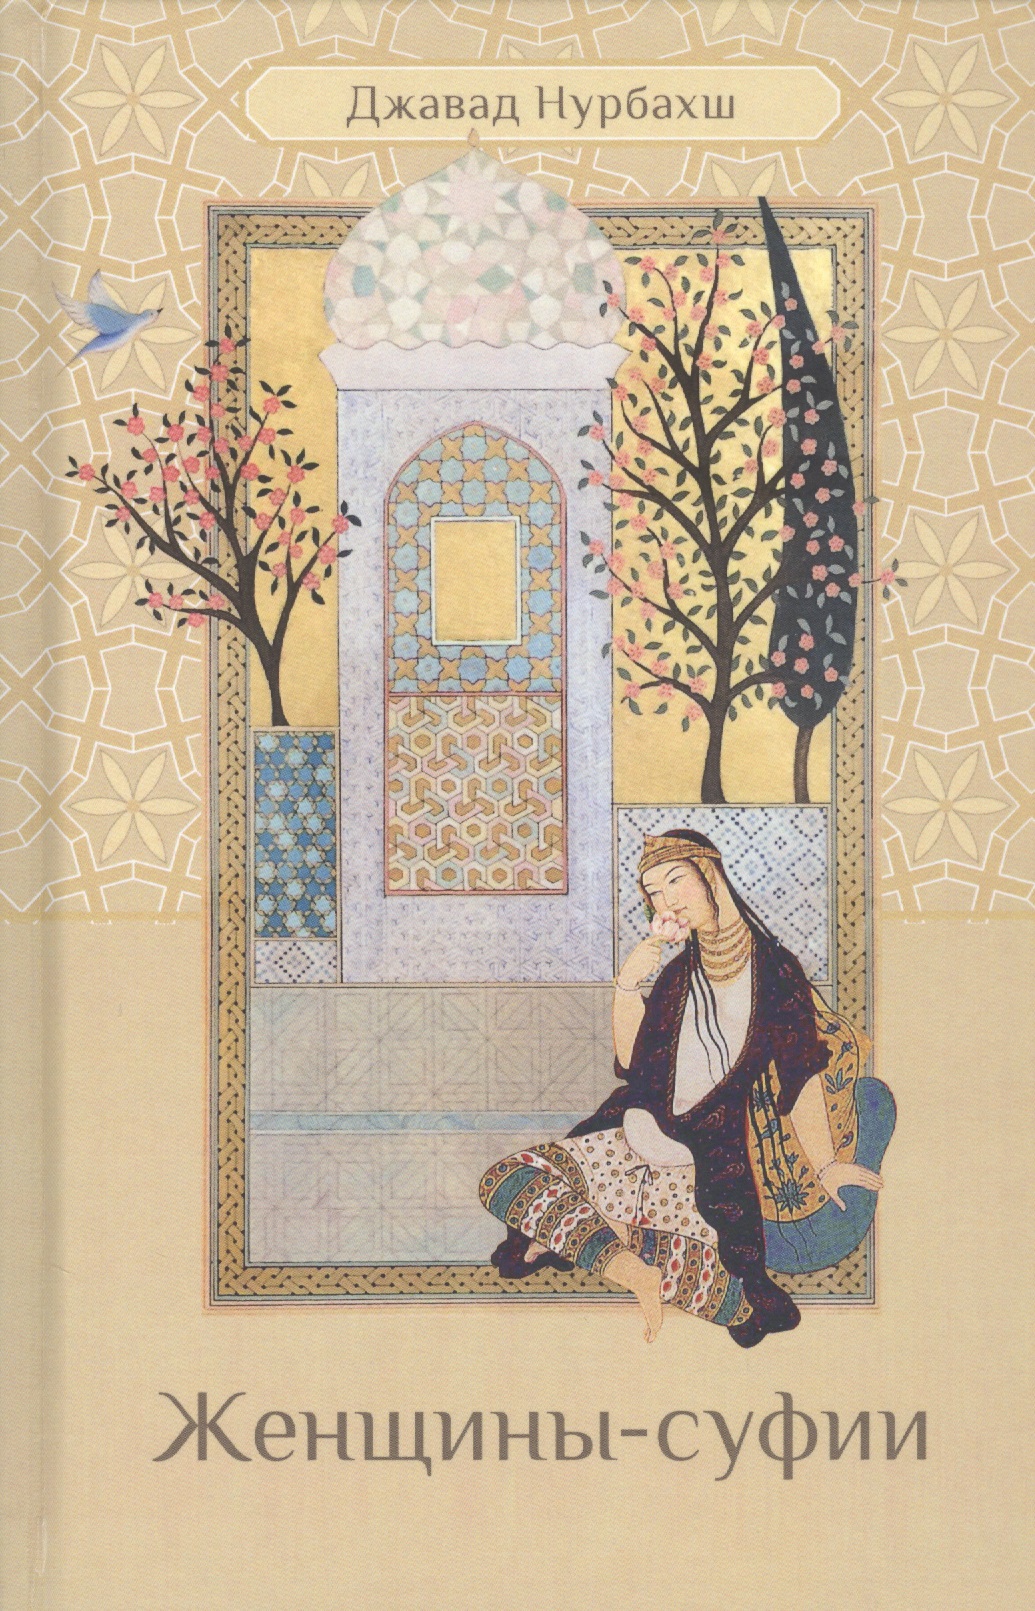 Женщины-суфии нурбахш джавад психология суфизма размышления о стадиях психологического становления и развития на суфийском пути